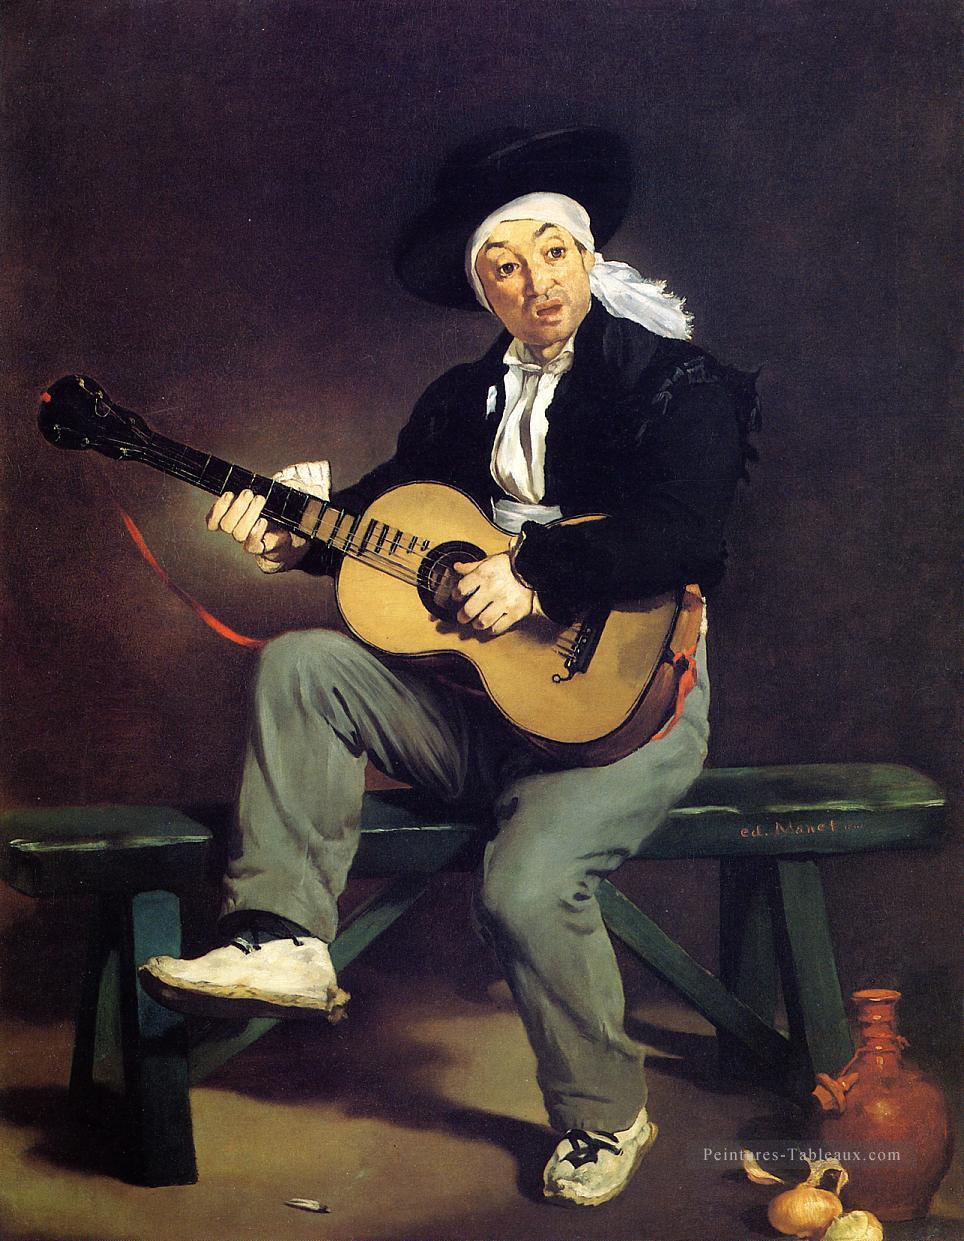 Le chanteur espagnol Le guitariste réalisme impressionnisme Édouard Manet Peintures à l'huile